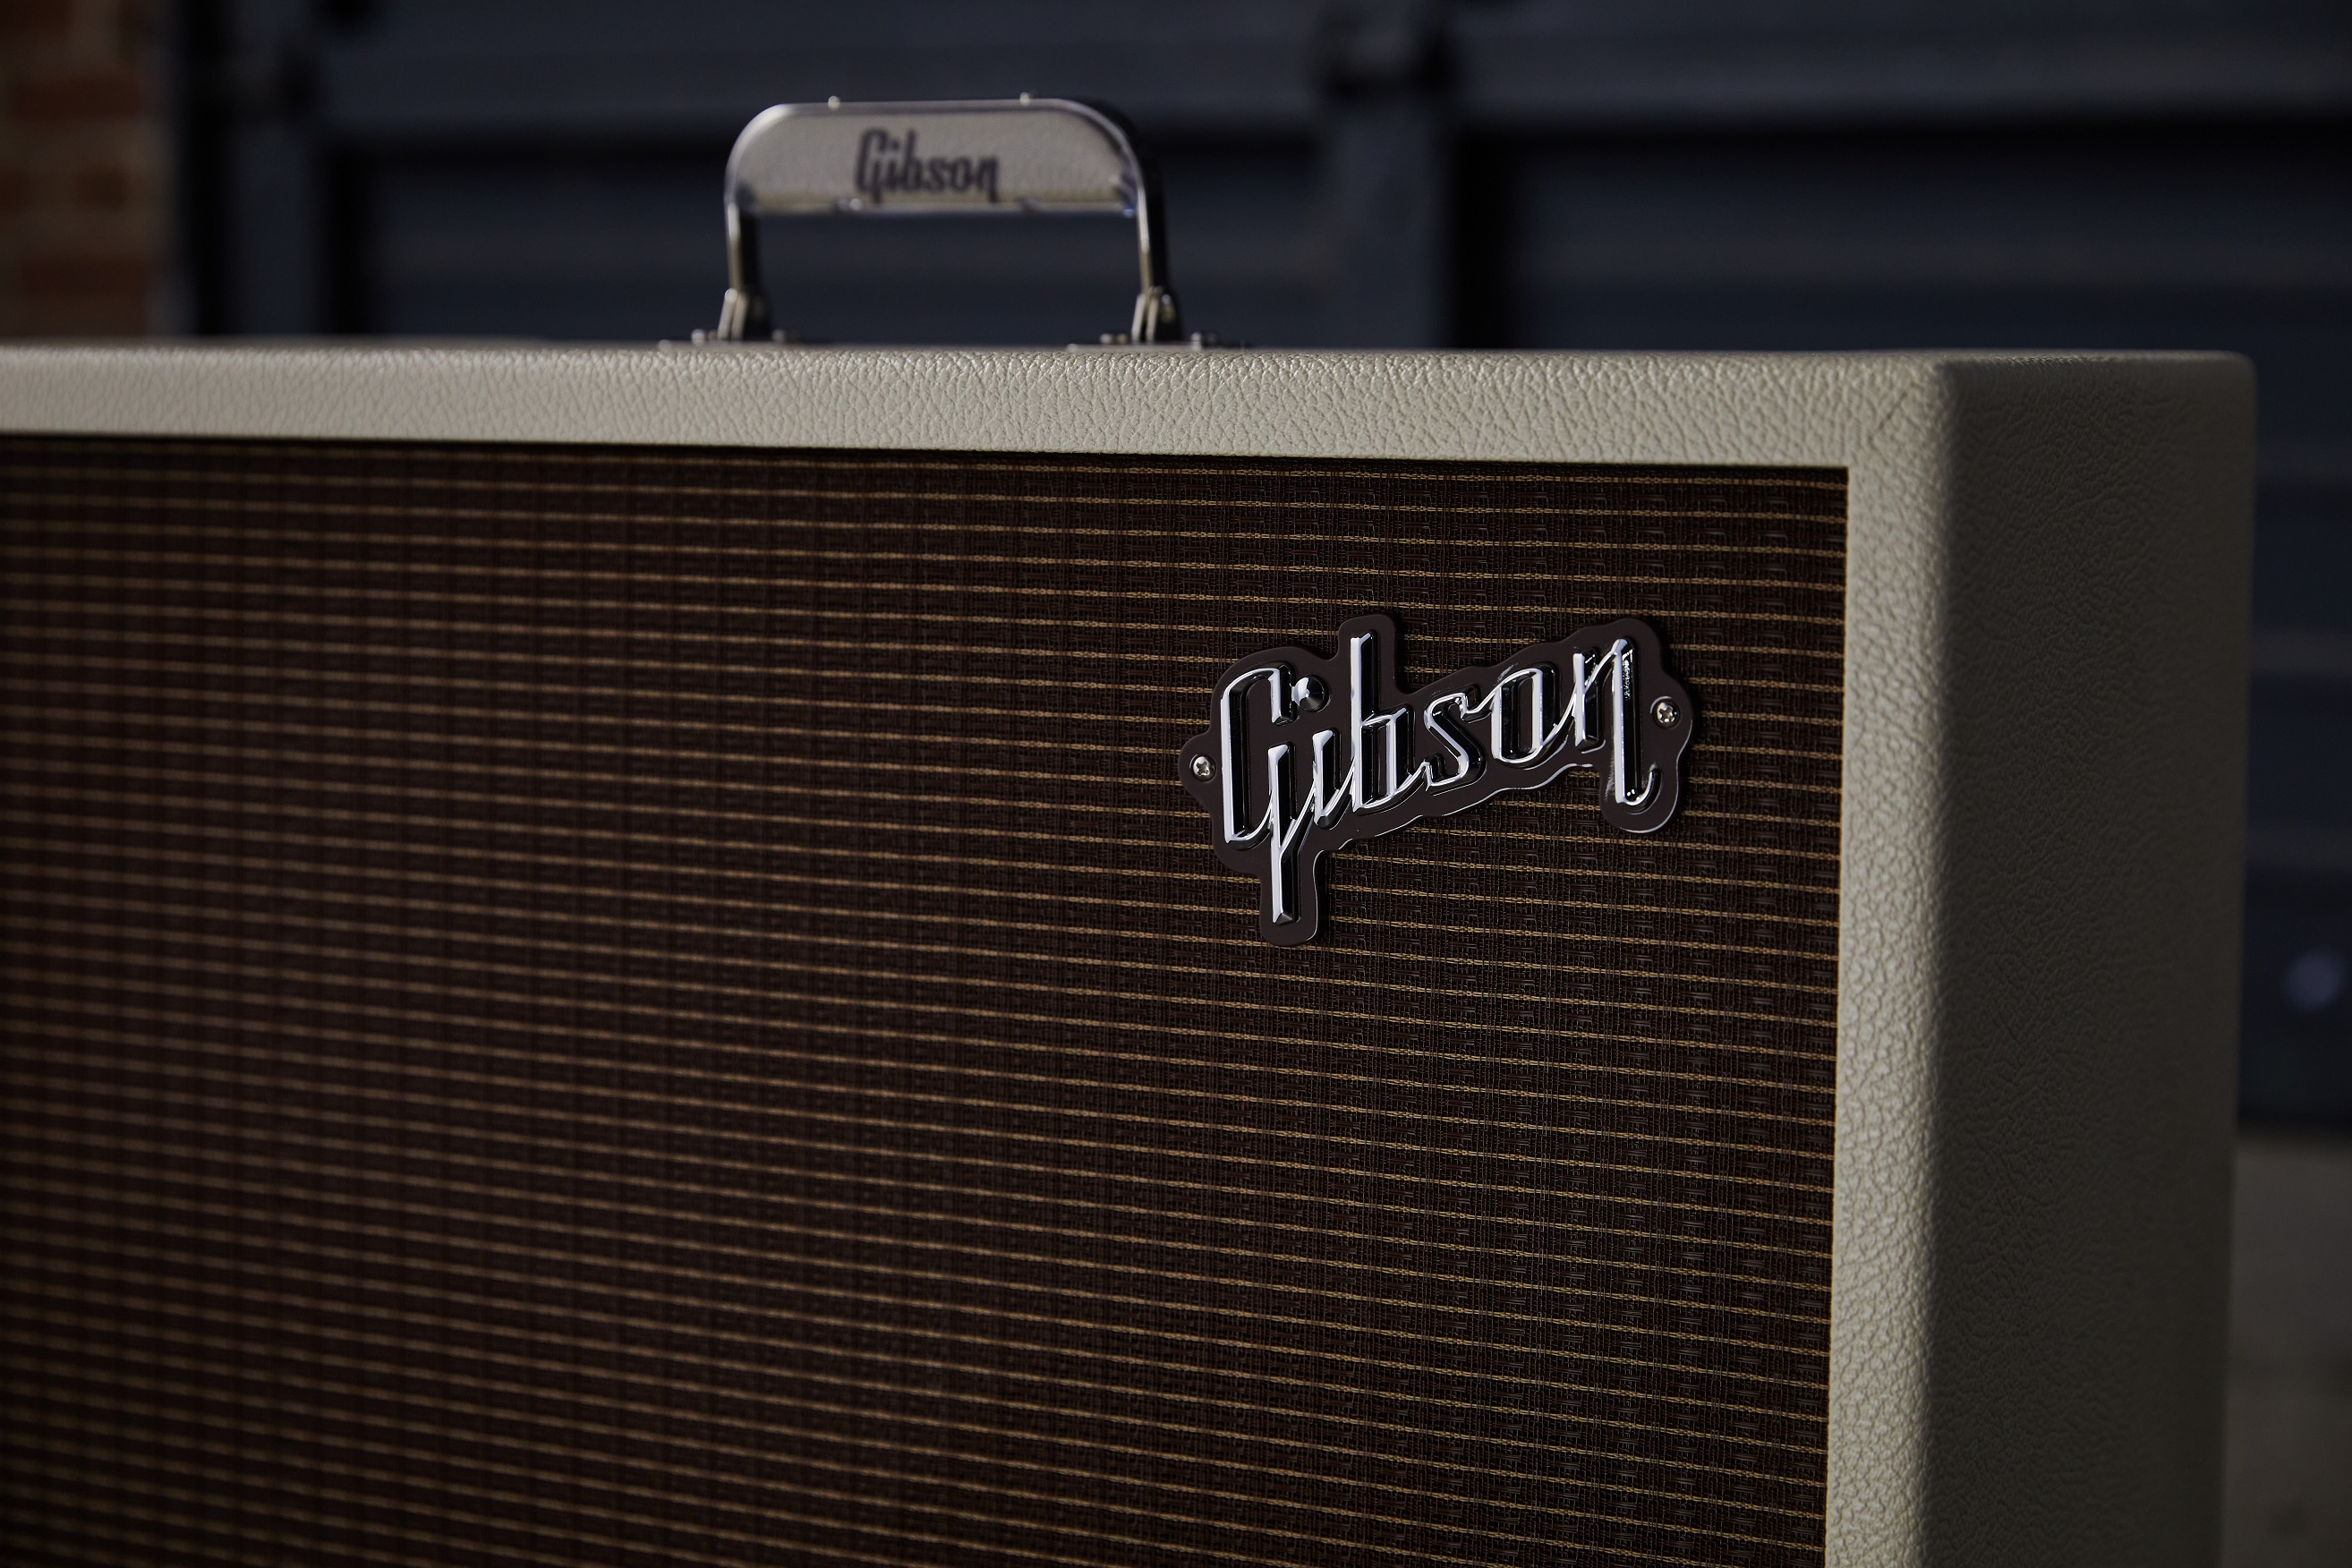 Gibson Dual Falcon 20 Combo 12w 2x10 - Combo amplificador para guitarra eléctrica - Variation 3